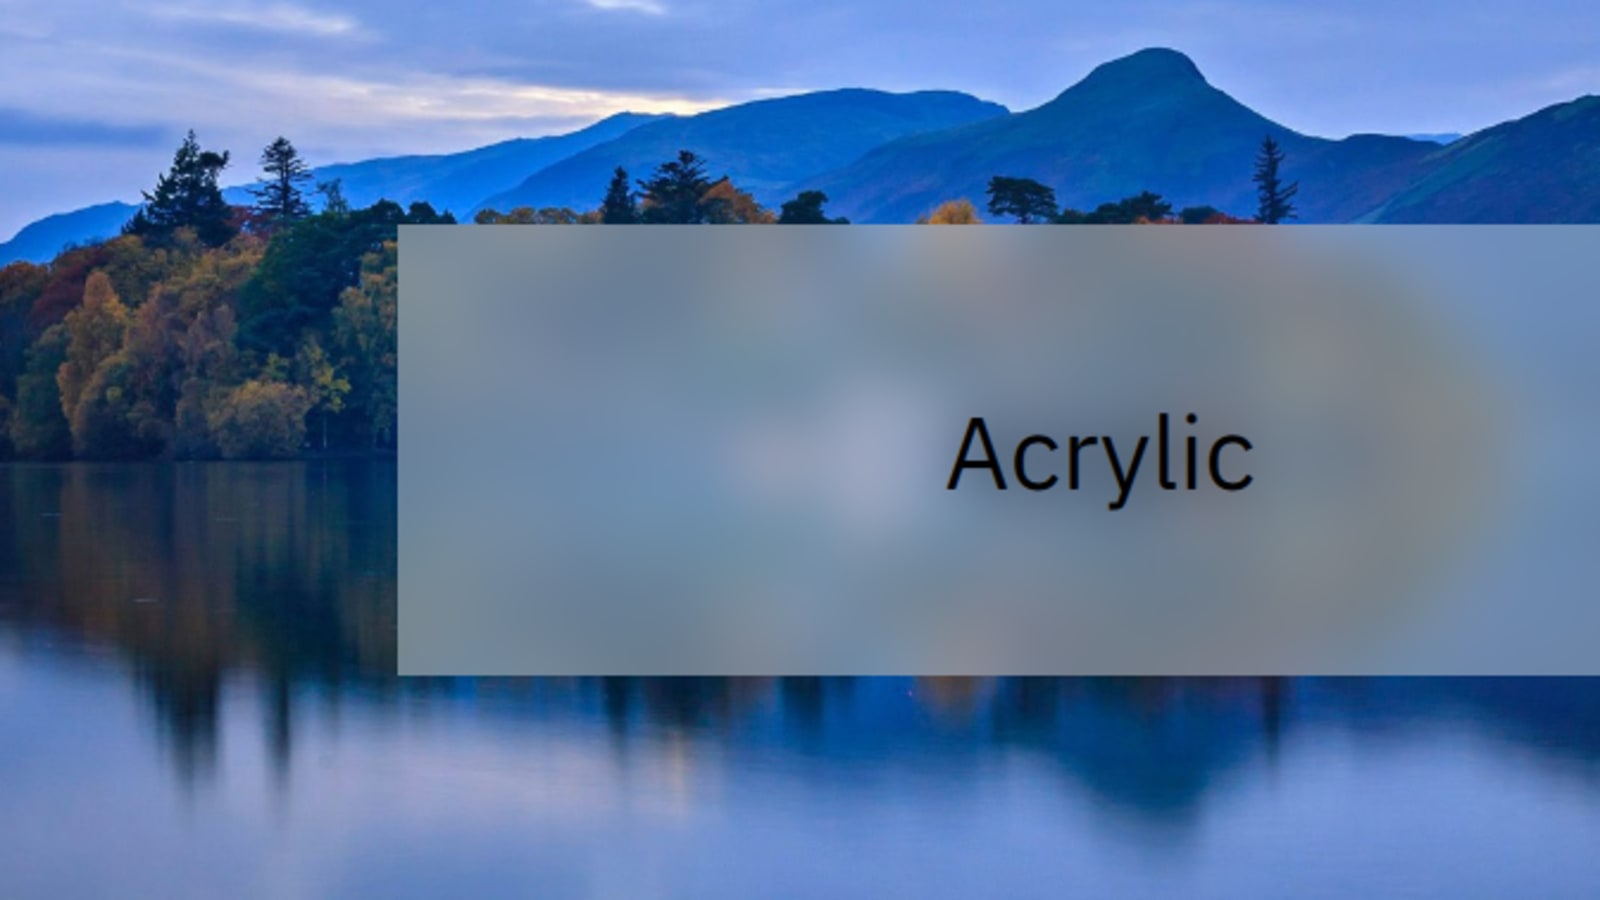 Microsoft Acrylic: Với Microsoft Acrylic, bạn sẽ được trình diễn những hình ảnh tuyệt đẹp về giao diện người dùng. Microsoft Acrylic là một bộ công cụ thiết kế đồ họa tuyệt vời giúp bạn tạo ra các hiệu ứng động và màu sắc hấp dẫn cho các phần tử trong giao diện. Đến và khám phá với chúng tôi để tận hưởng trải nghiệm này. 